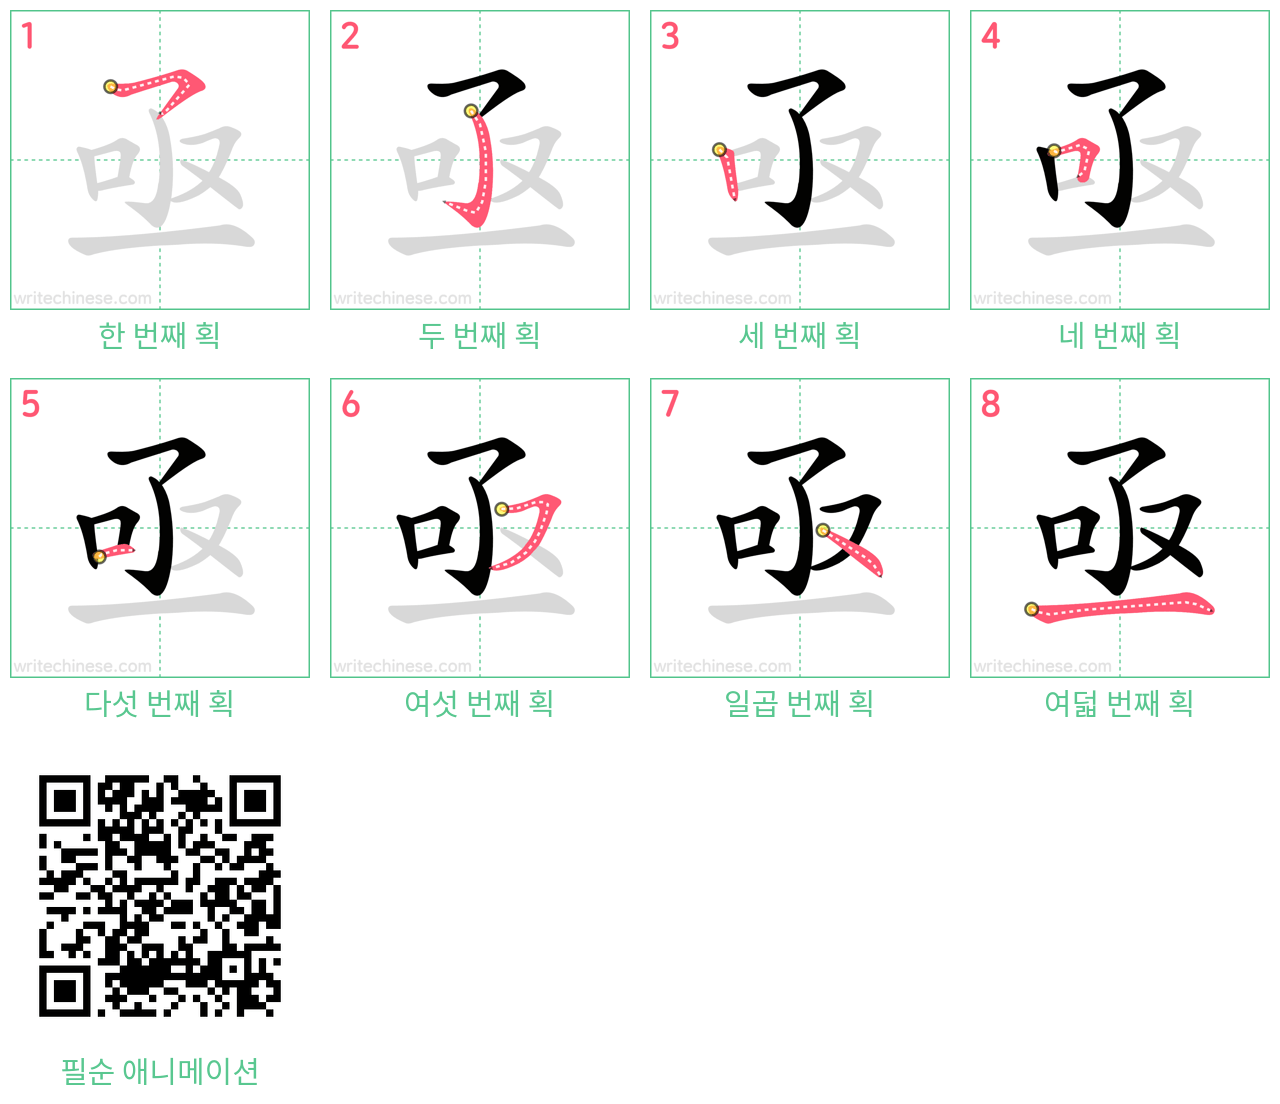 亟 step-by-step stroke order diagrams